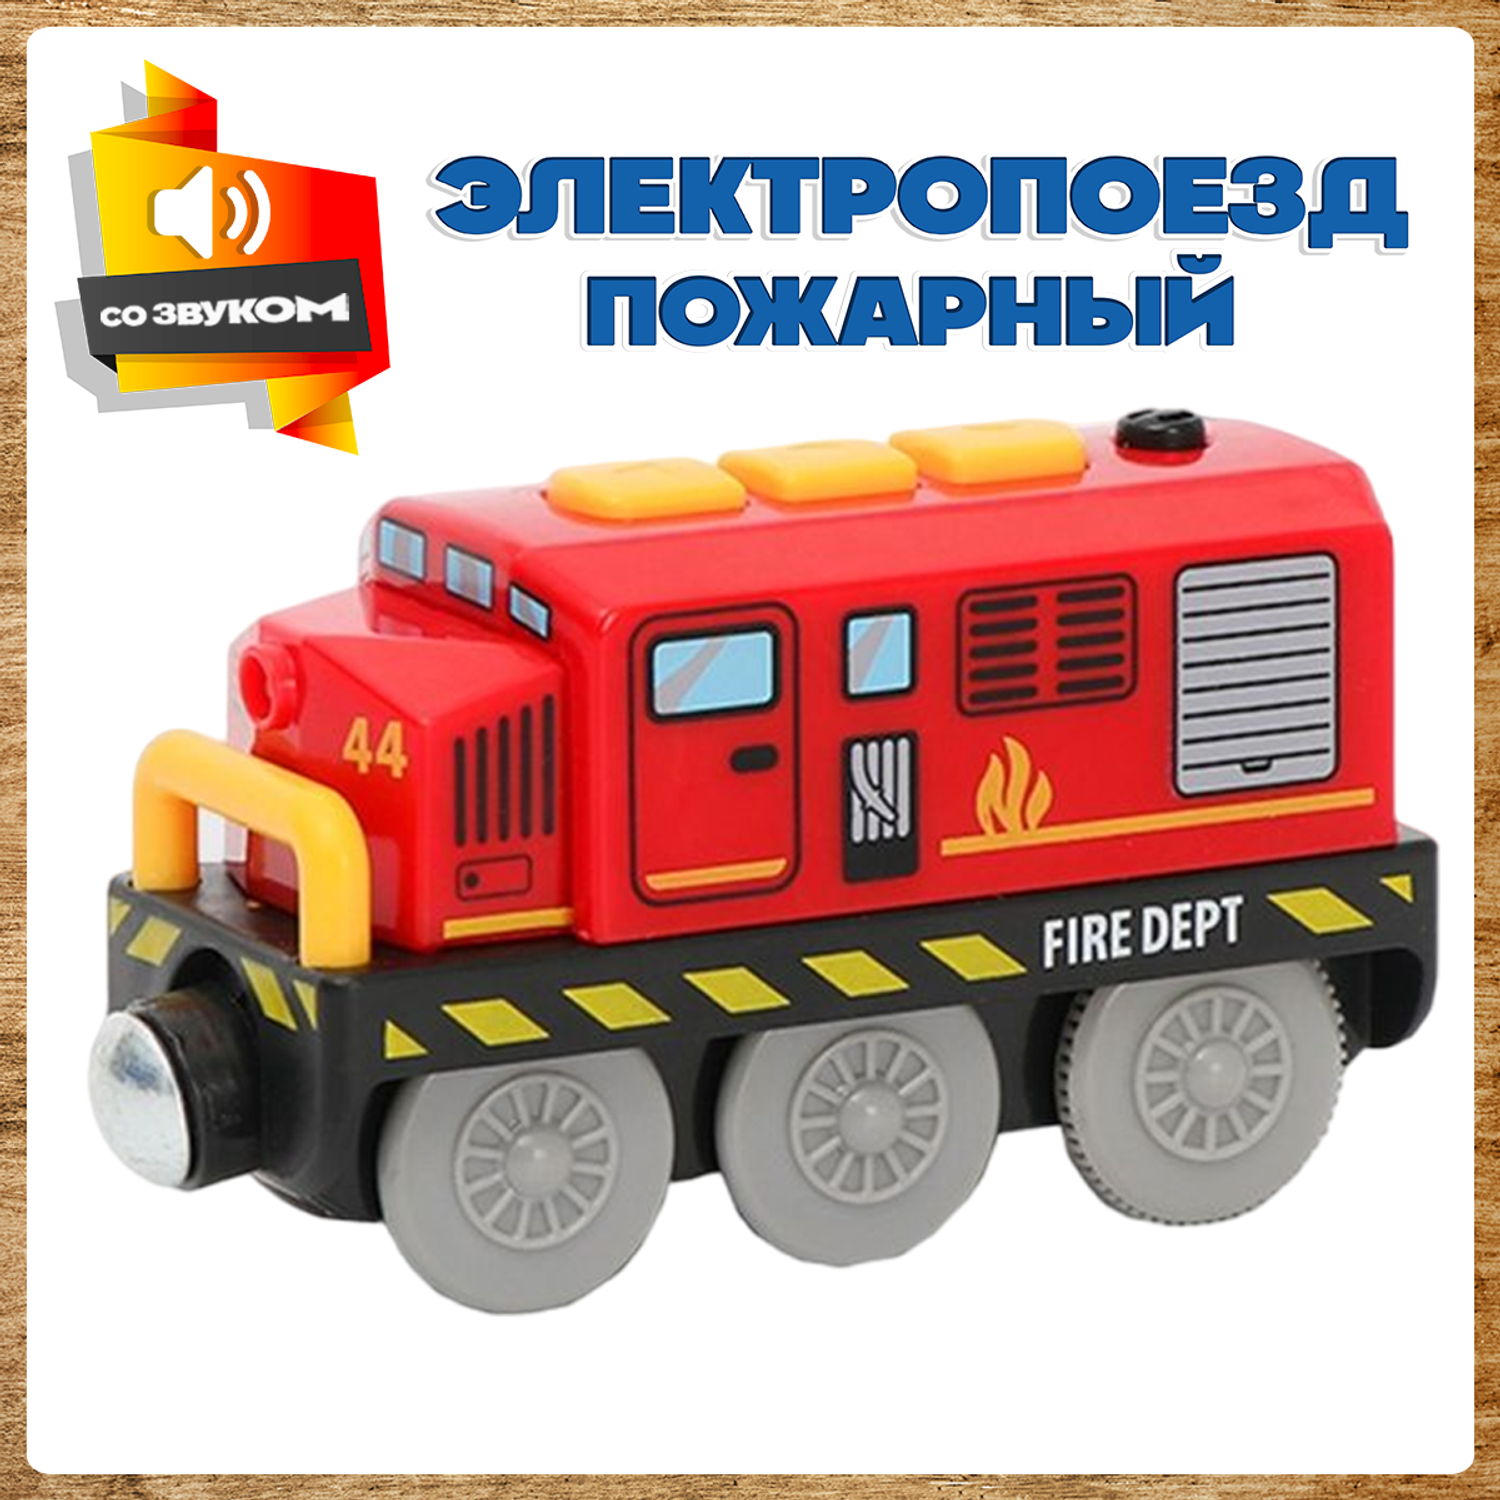 Поезд детский со светом А.Паровозиков пожарный со звуком игрушечная модель на батарейках АП-001/ПЛ-00022 - фото 1